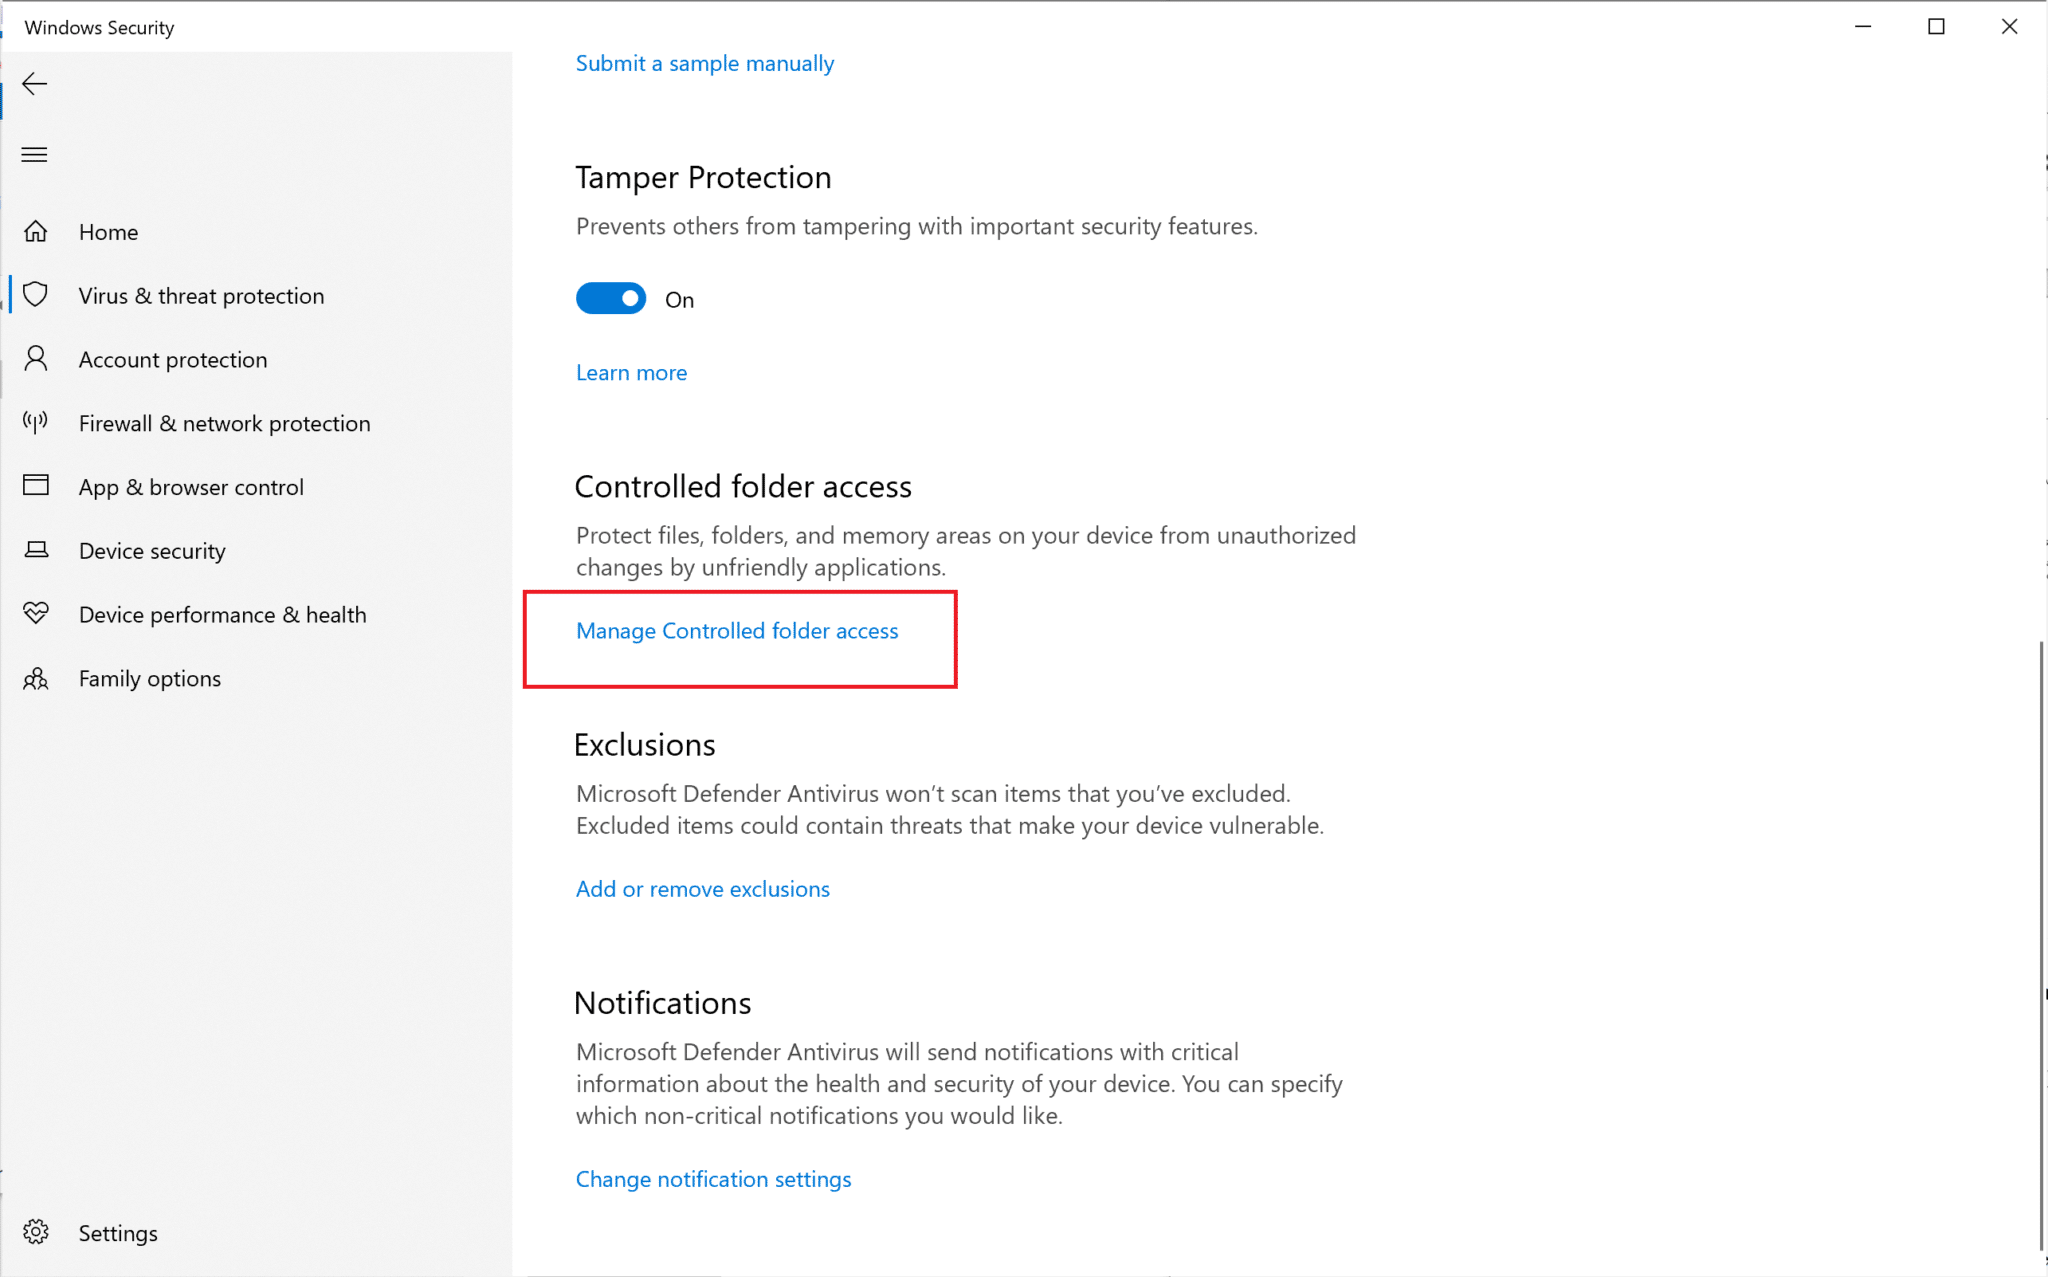 Haga clic en Administrar acceso controlado a la carpeta | La carpeta de reparación sigue volviendo a solo lectura en Windows 10